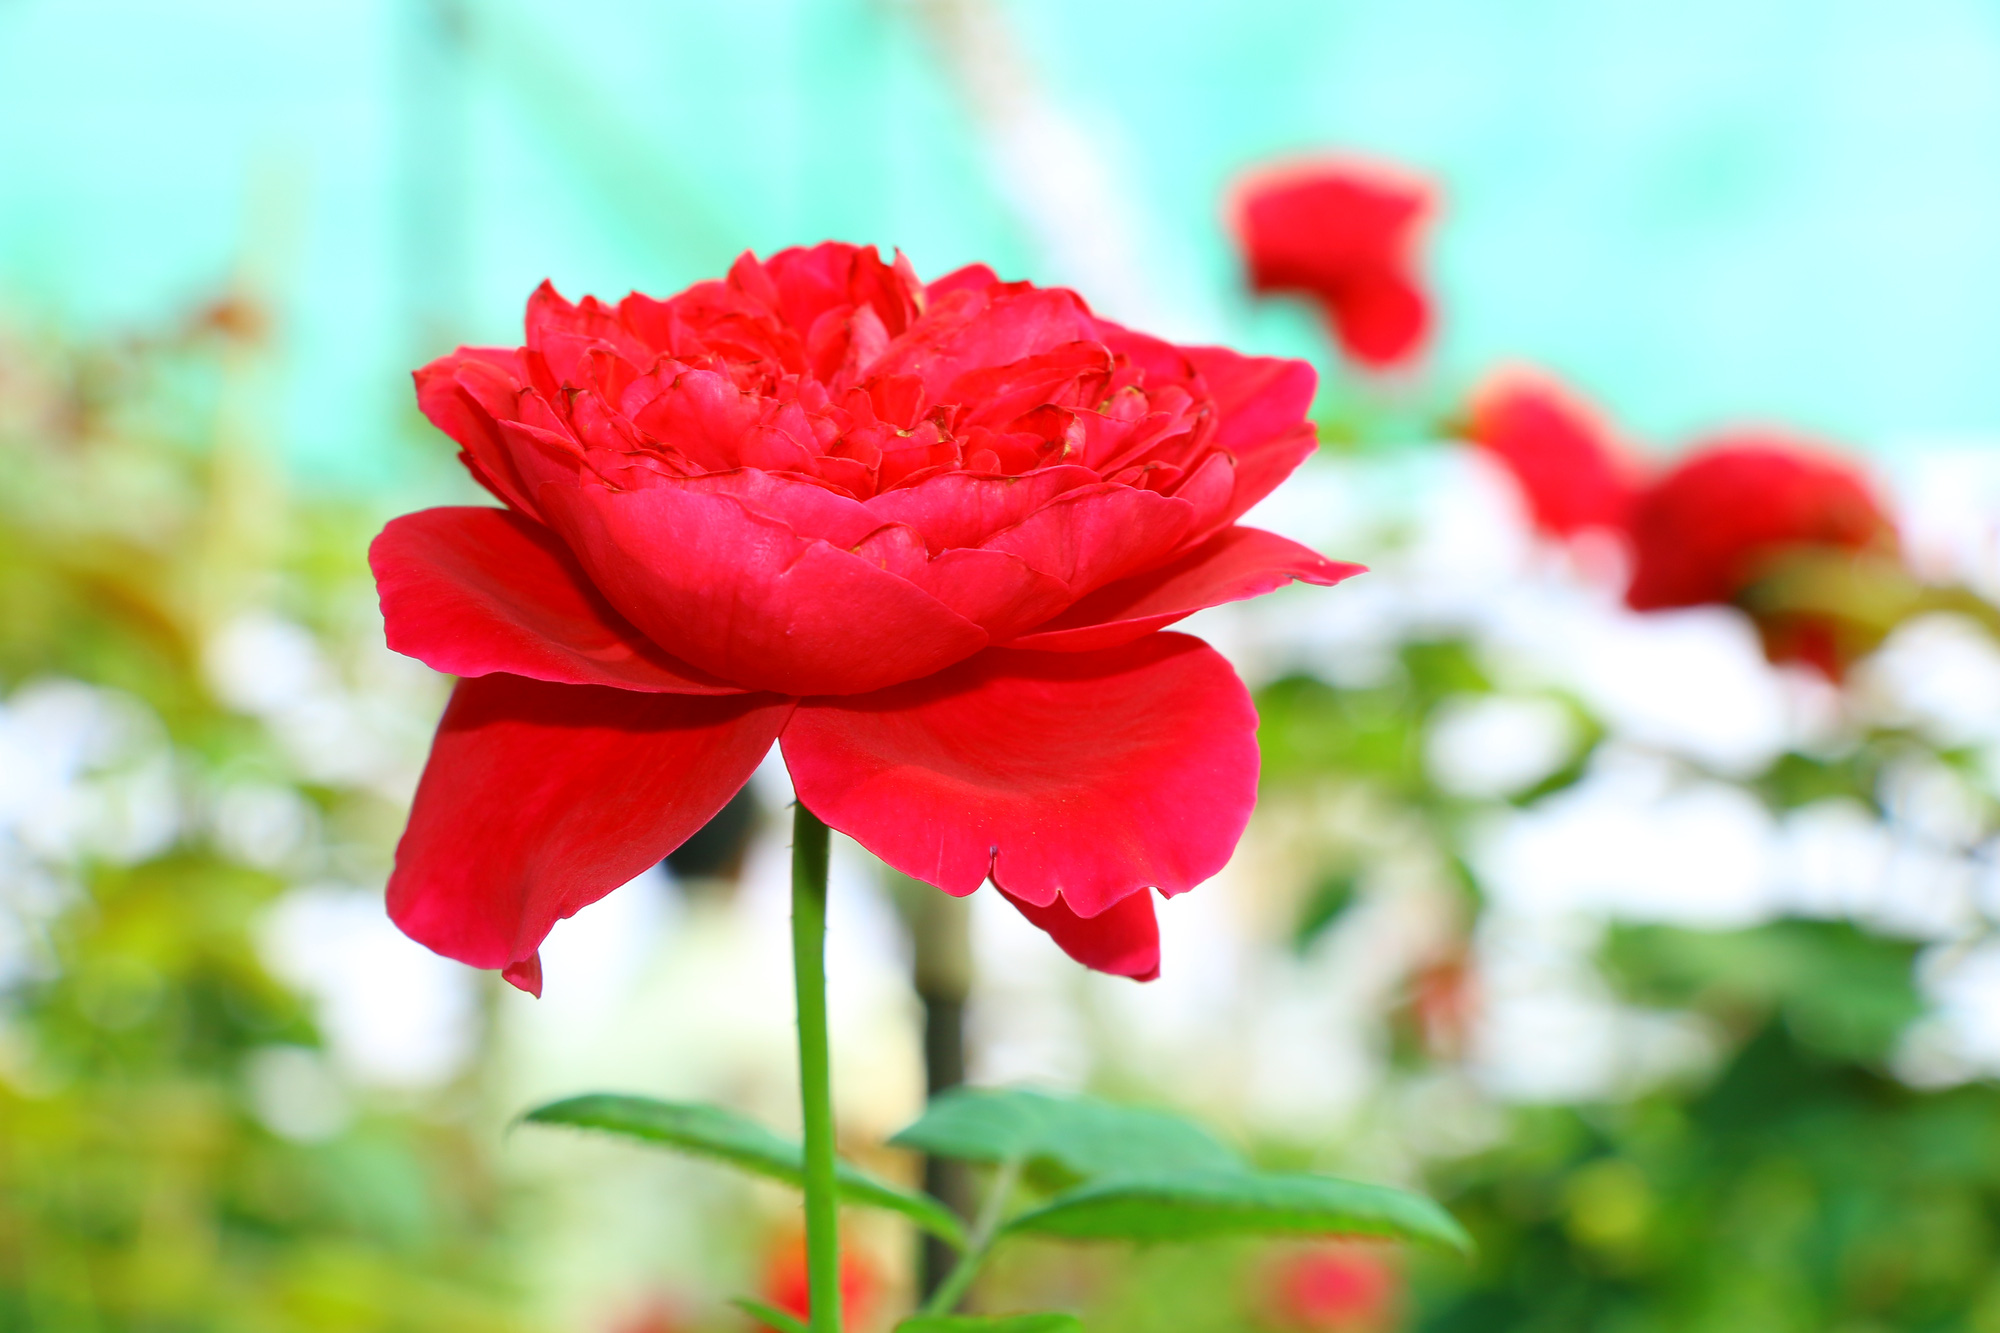 Dạo bước trong vườn hoa hồng Pháp qua bức ảnh này sẽ giúp bạn thư giãn và cảm nhận được một không gian điêu luyện, thơ mộng.